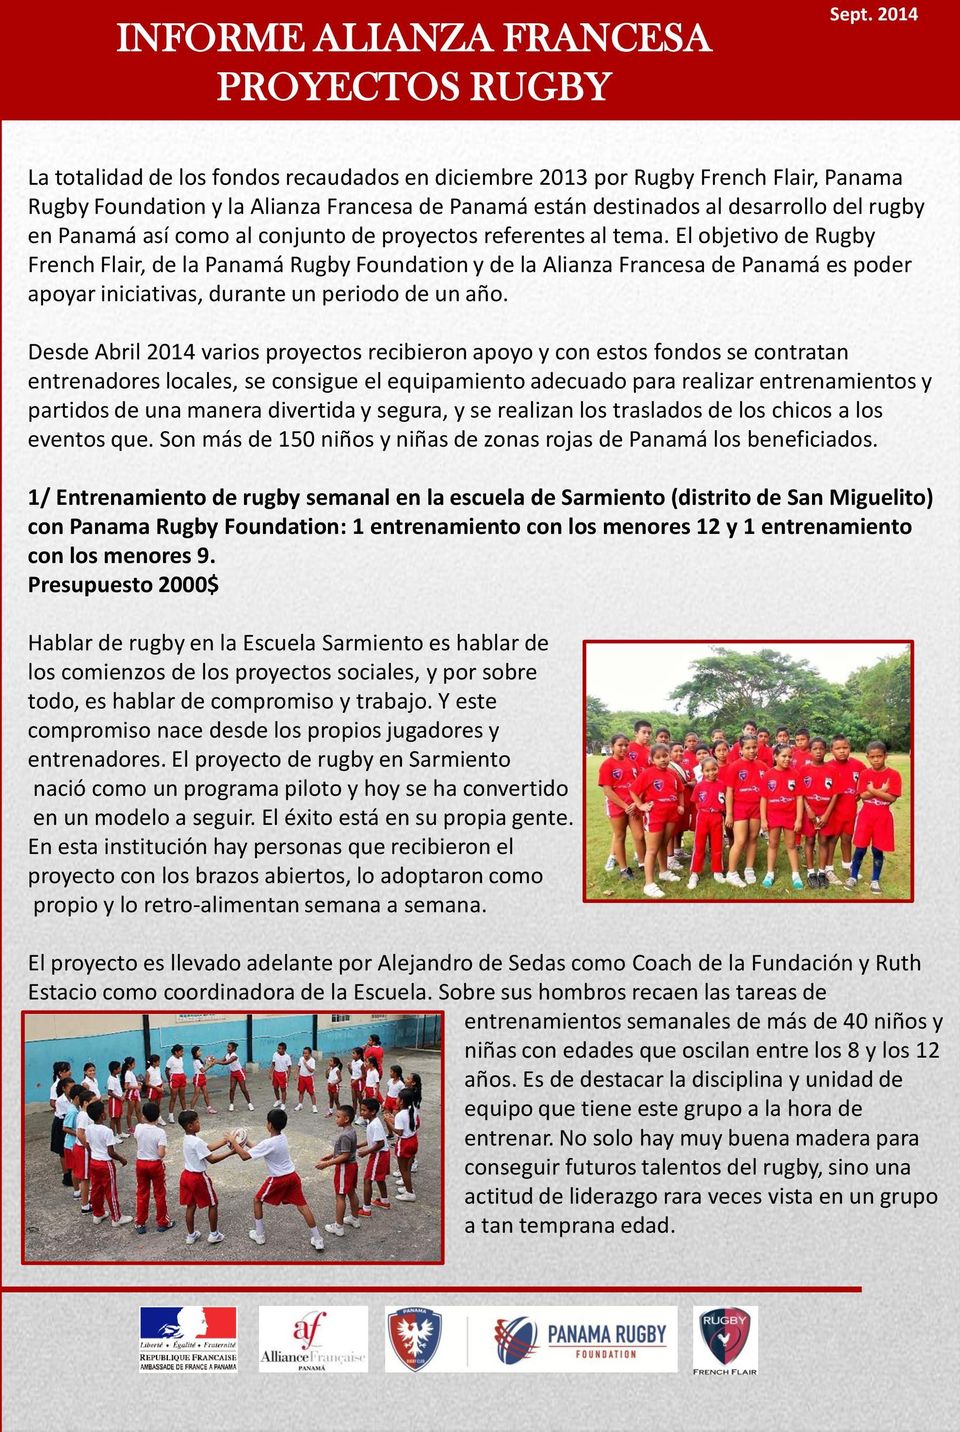 El objetivo de Rugby French Flair, de la Panamá Rugby Foundation y de la Alianza Francesa de Panamá es poder apoyar iniciativas, durante un periodo de un año.